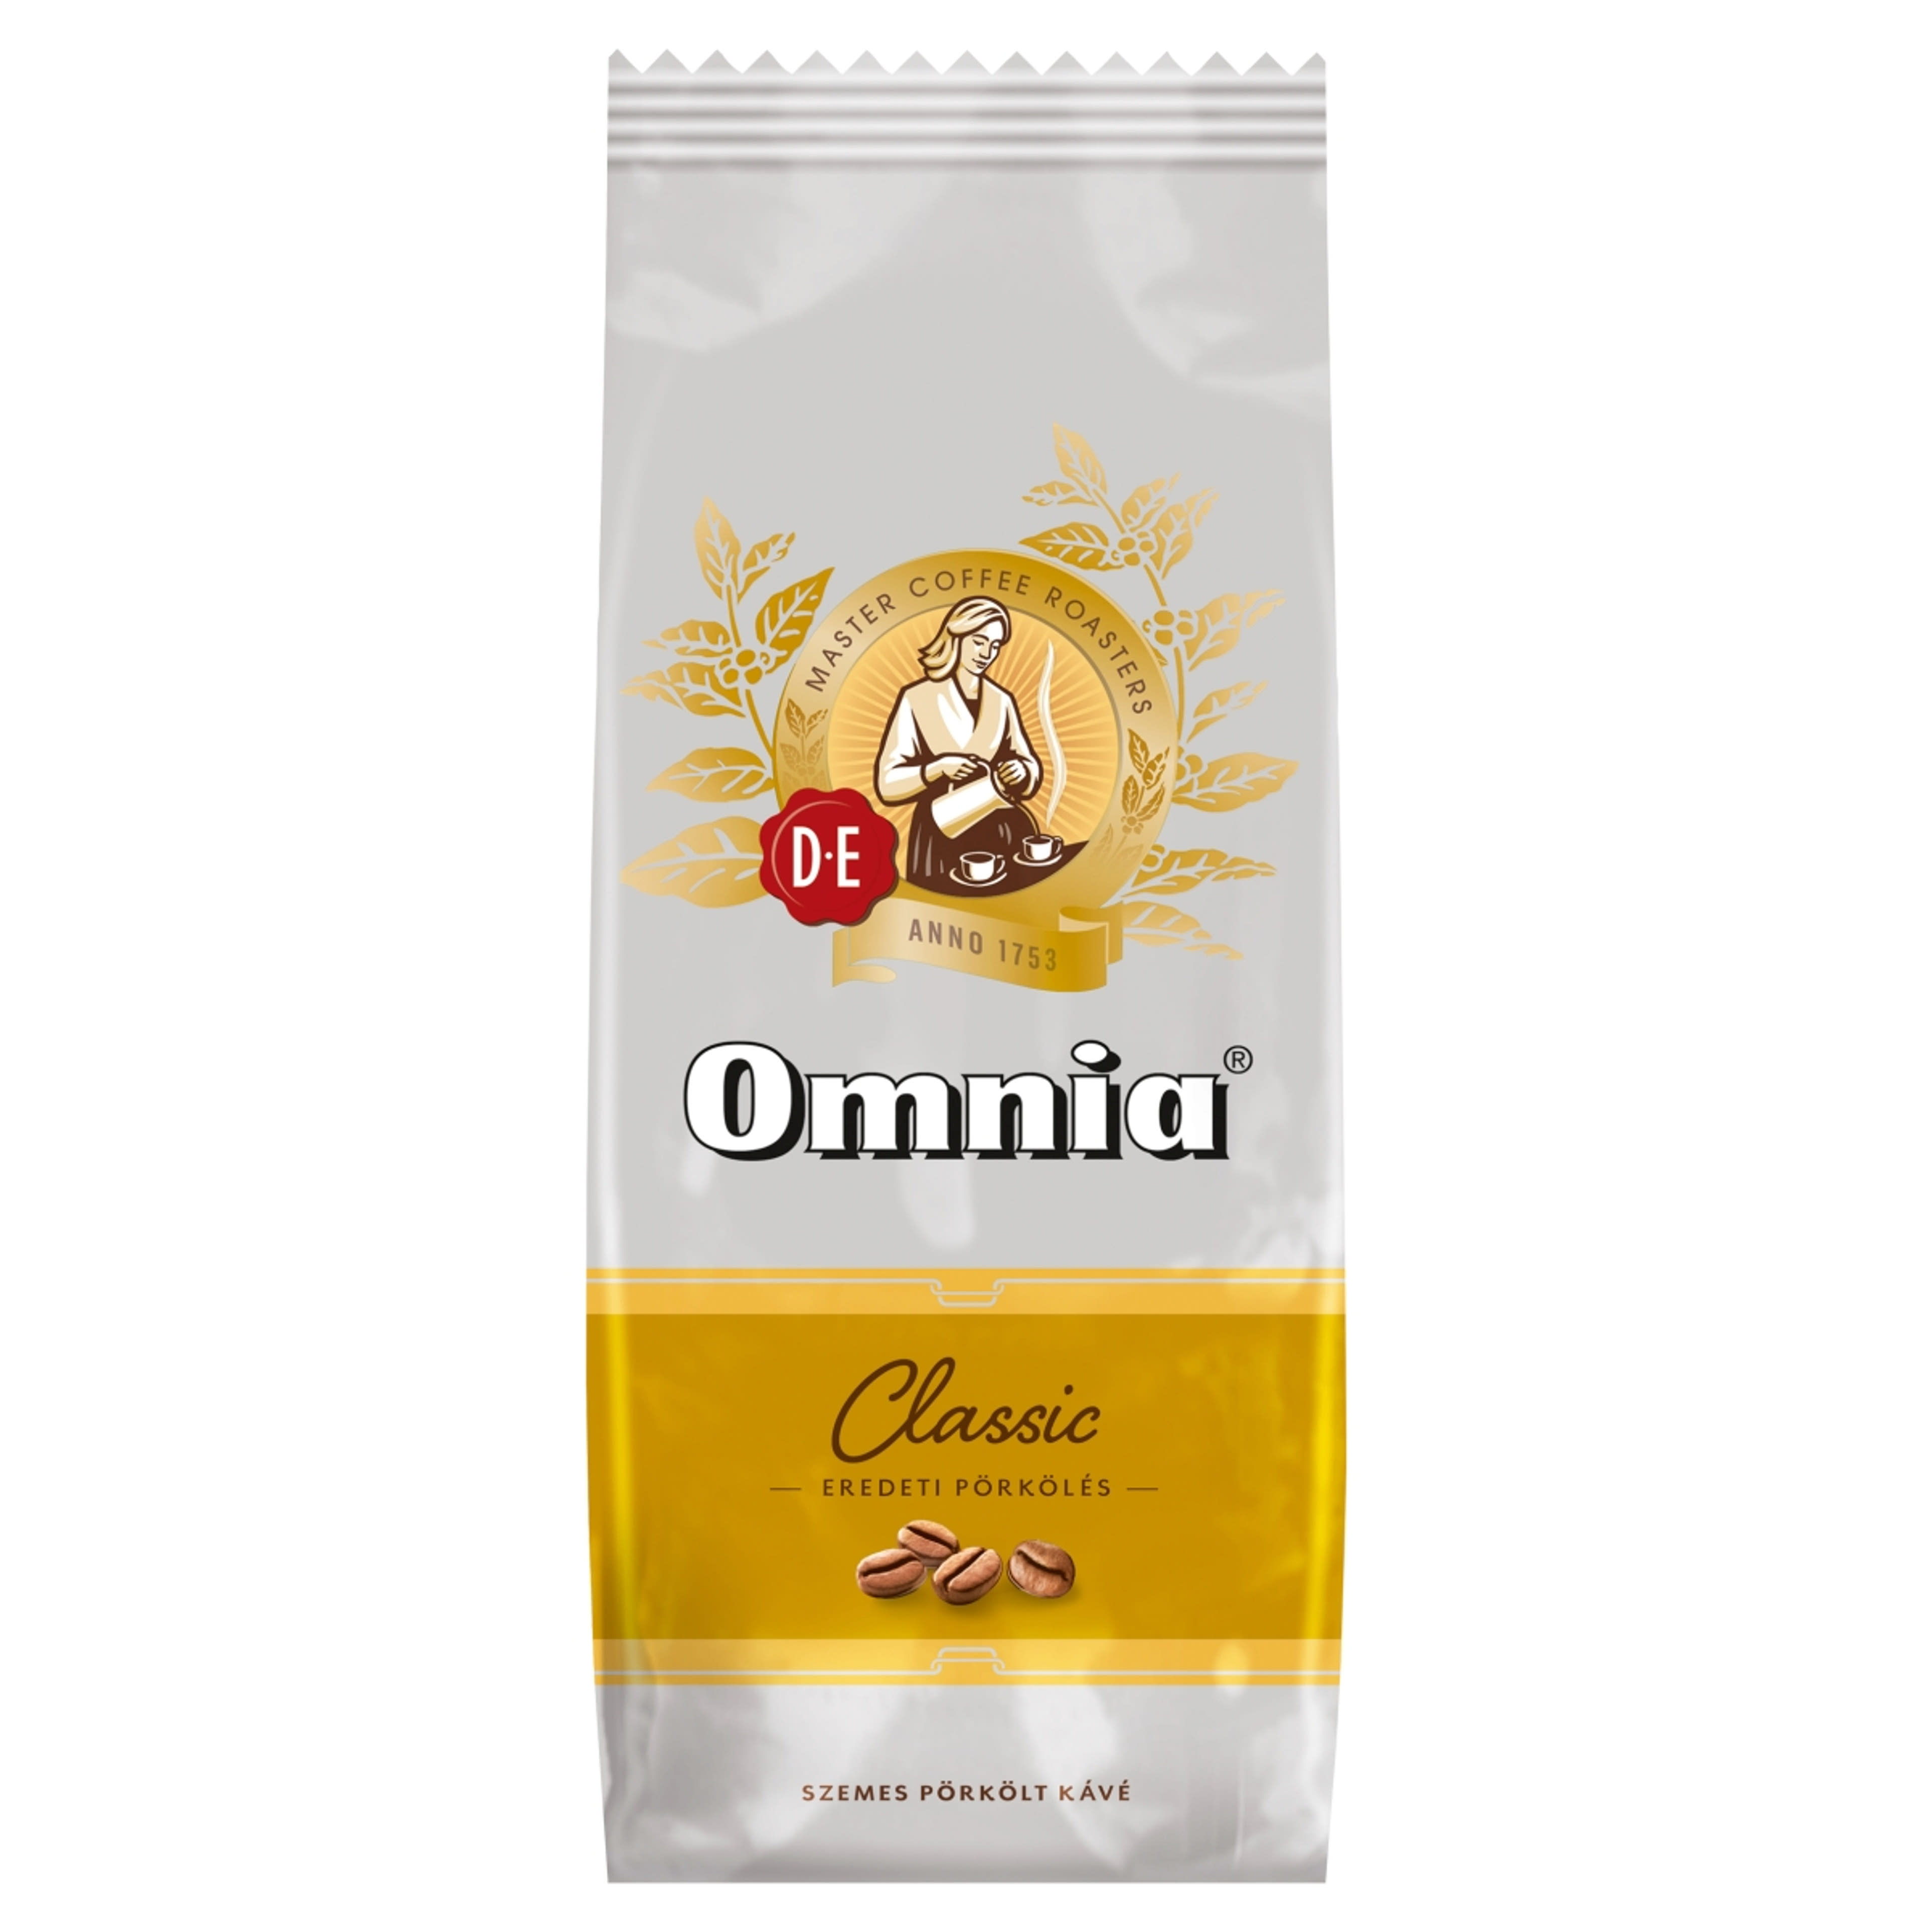 Douwe Egberts Omnia Classic eredeti pörkölésű szemes pörkölt kávé - 1000 g-1